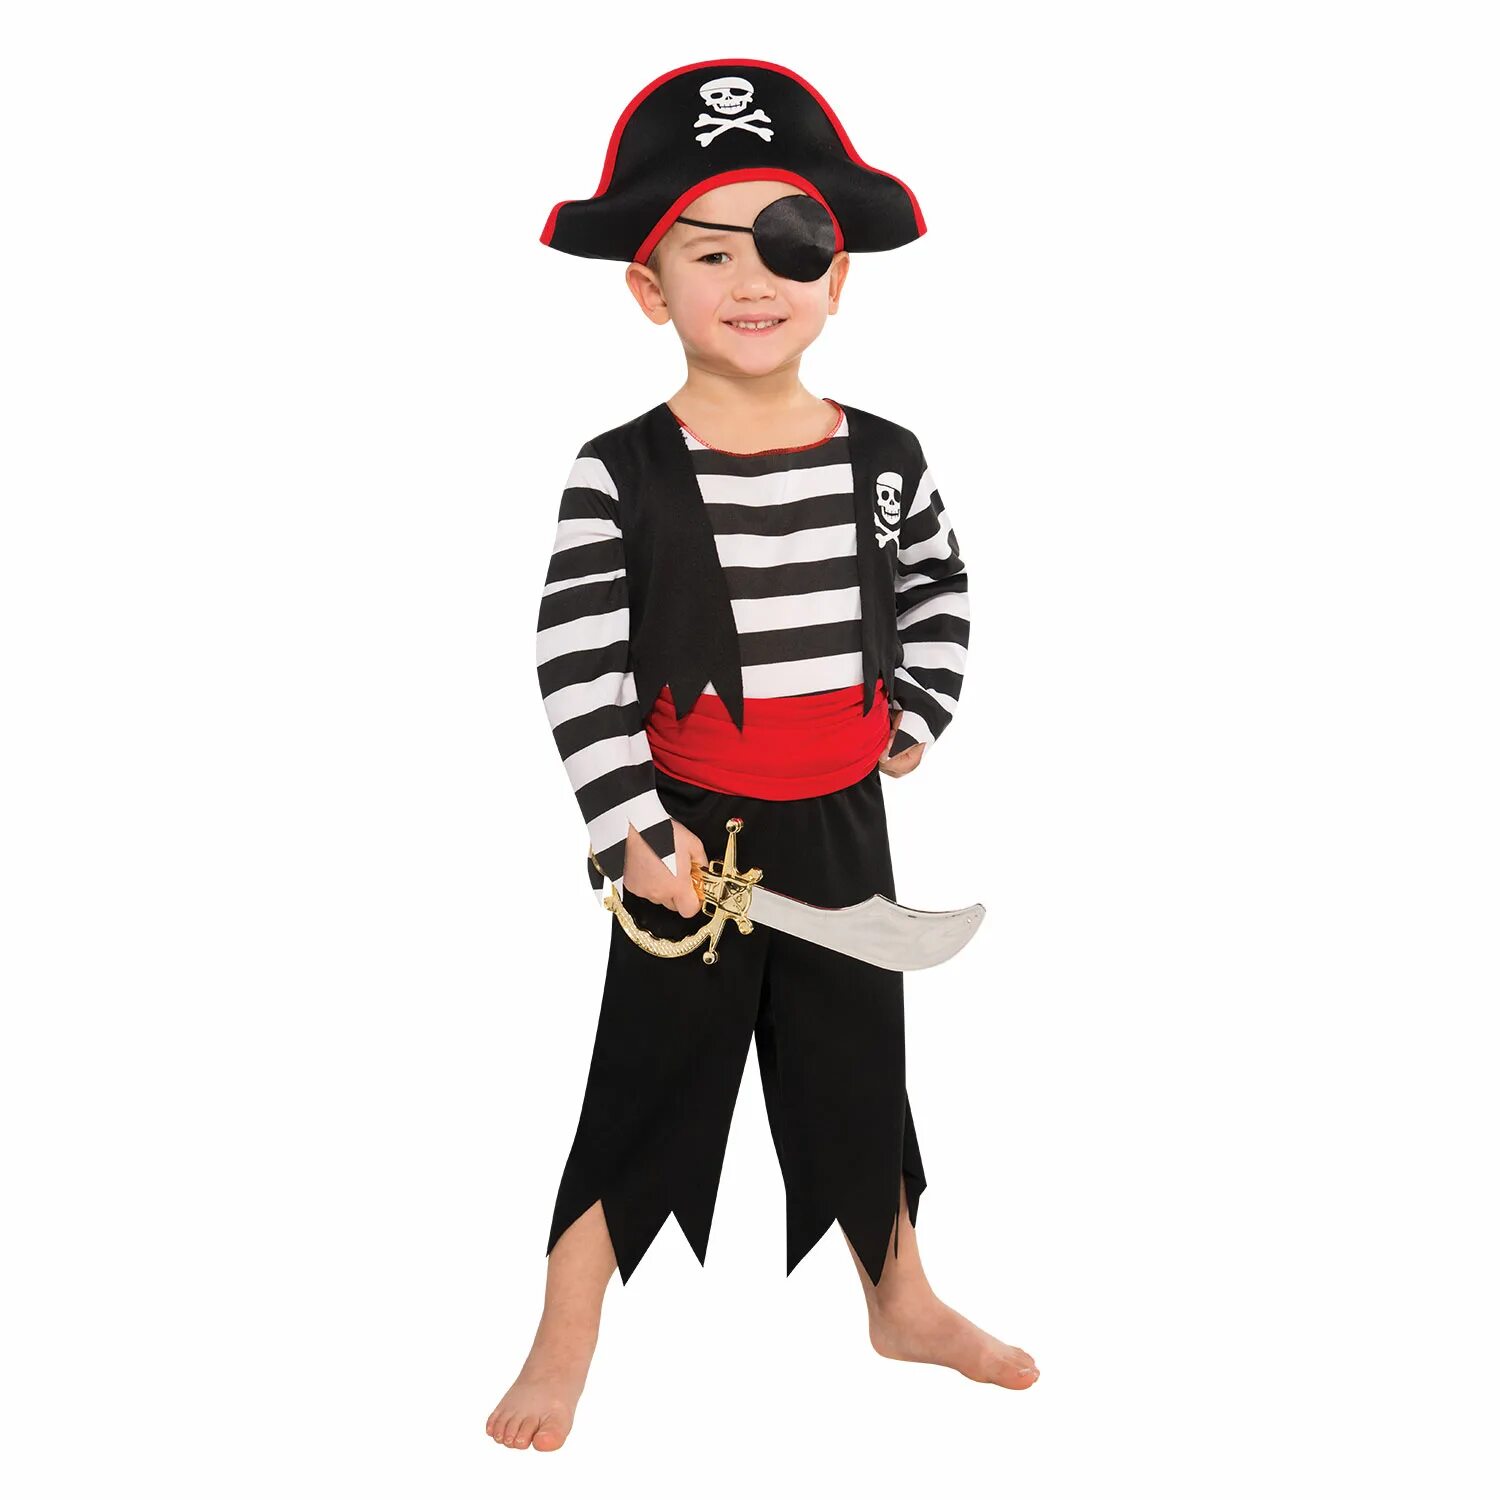 Где находится нарядный пират. Костюм пирата. Костюм пирата для детей. Новогодний костюм пирата для мальчика. Пиратский костюм для детей.